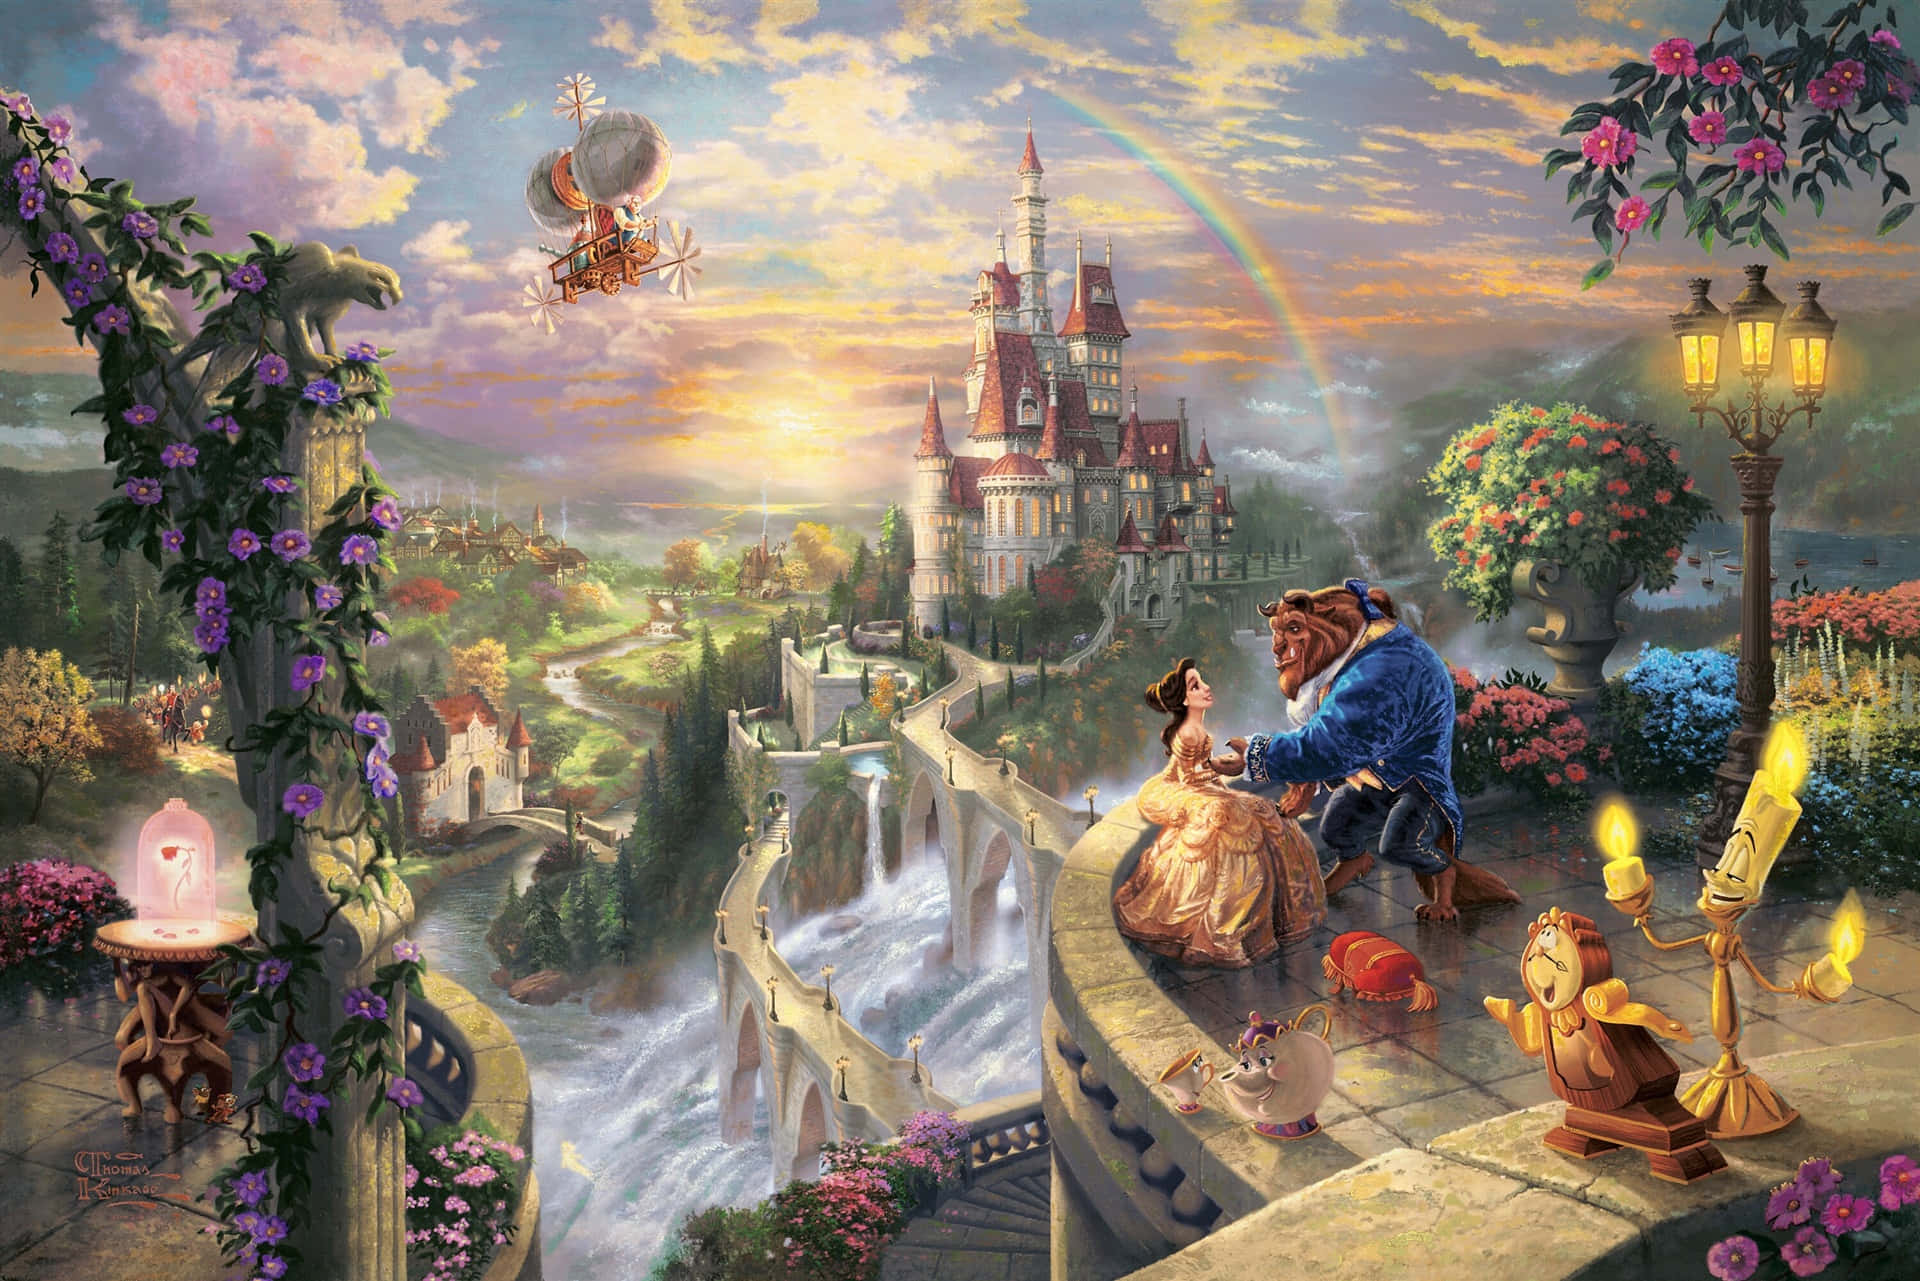 Erlebedie Magie Von Disney World In Hd Wallpaper